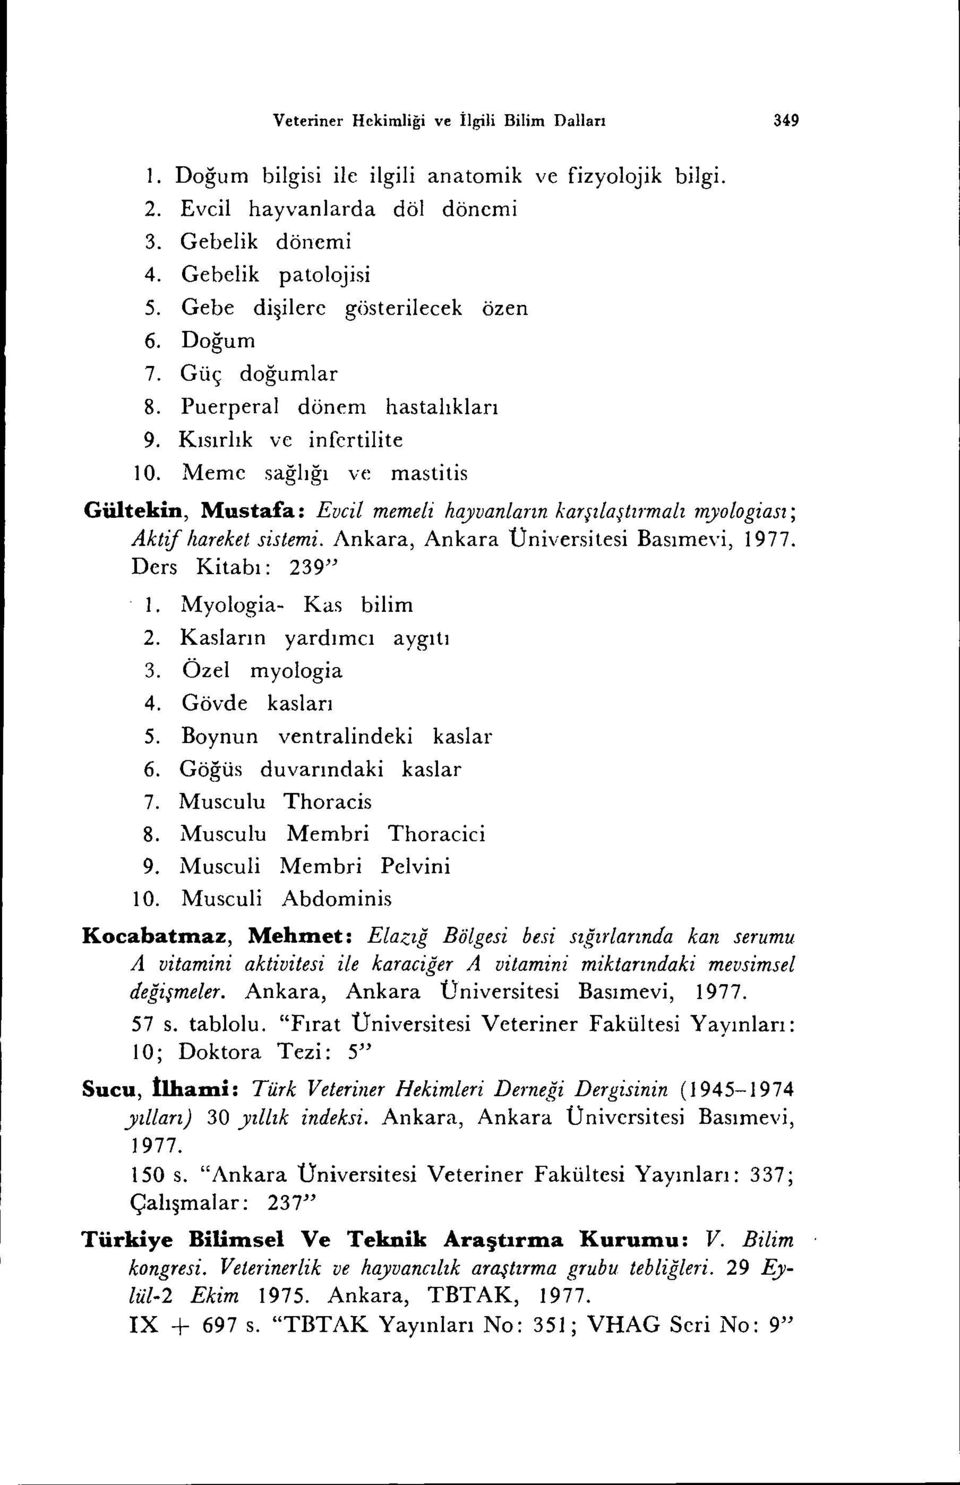 Meme sağlığı ve mastitis Gültekin, Mustafa: Evcil memeli hayvanların karşılaştırmalı myologiası; Aktif hareket sistemi. Ankara, Ankara Üniversitesi Basımevi, 1977. Ders Kitabı: 239" I.